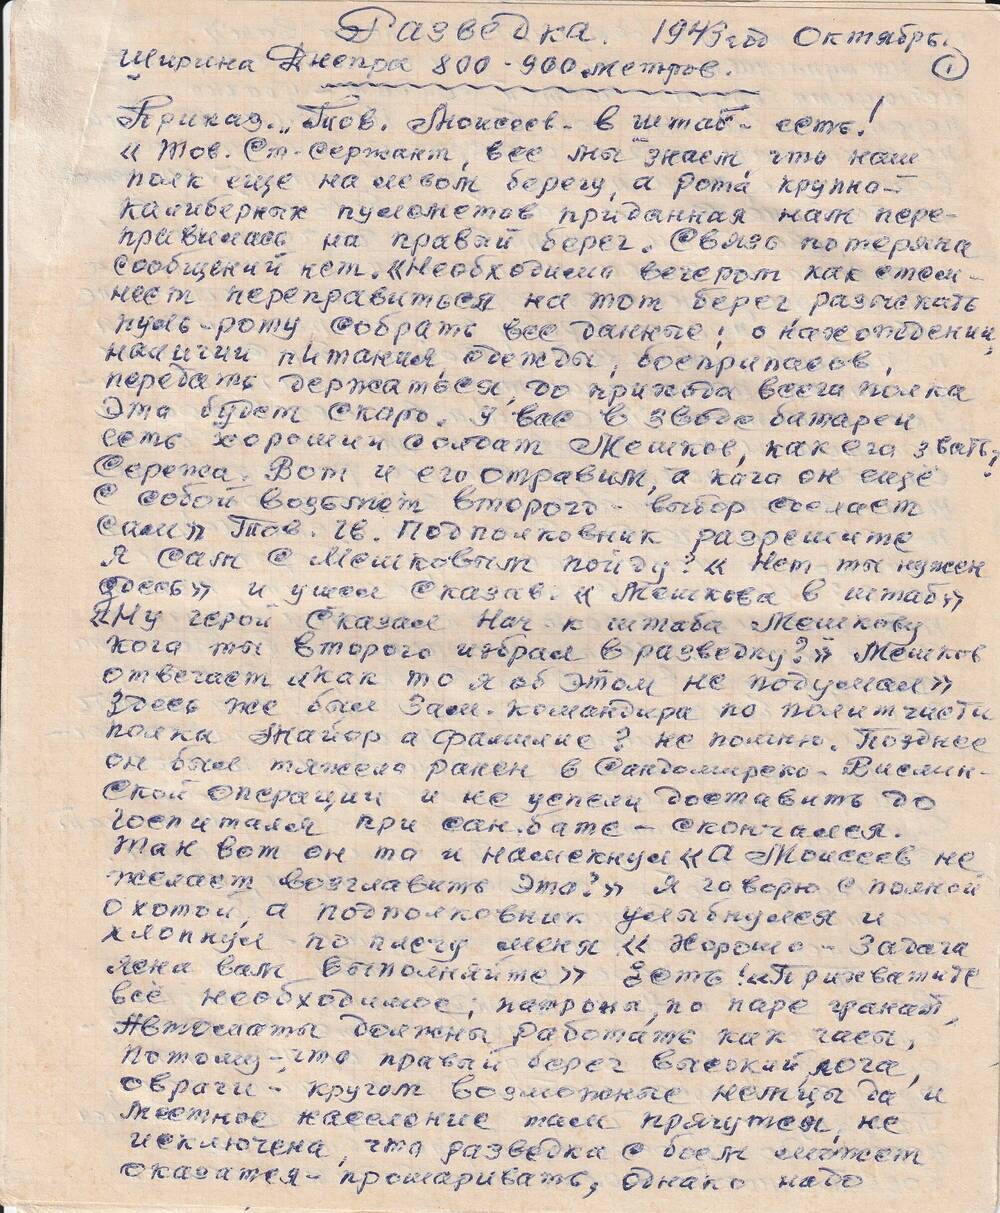 Воспоминания Моисеева Михаила Ильича, ветерана Великой Отечественной войны о разведывательной операции на Днепре в октябре 1943 г.